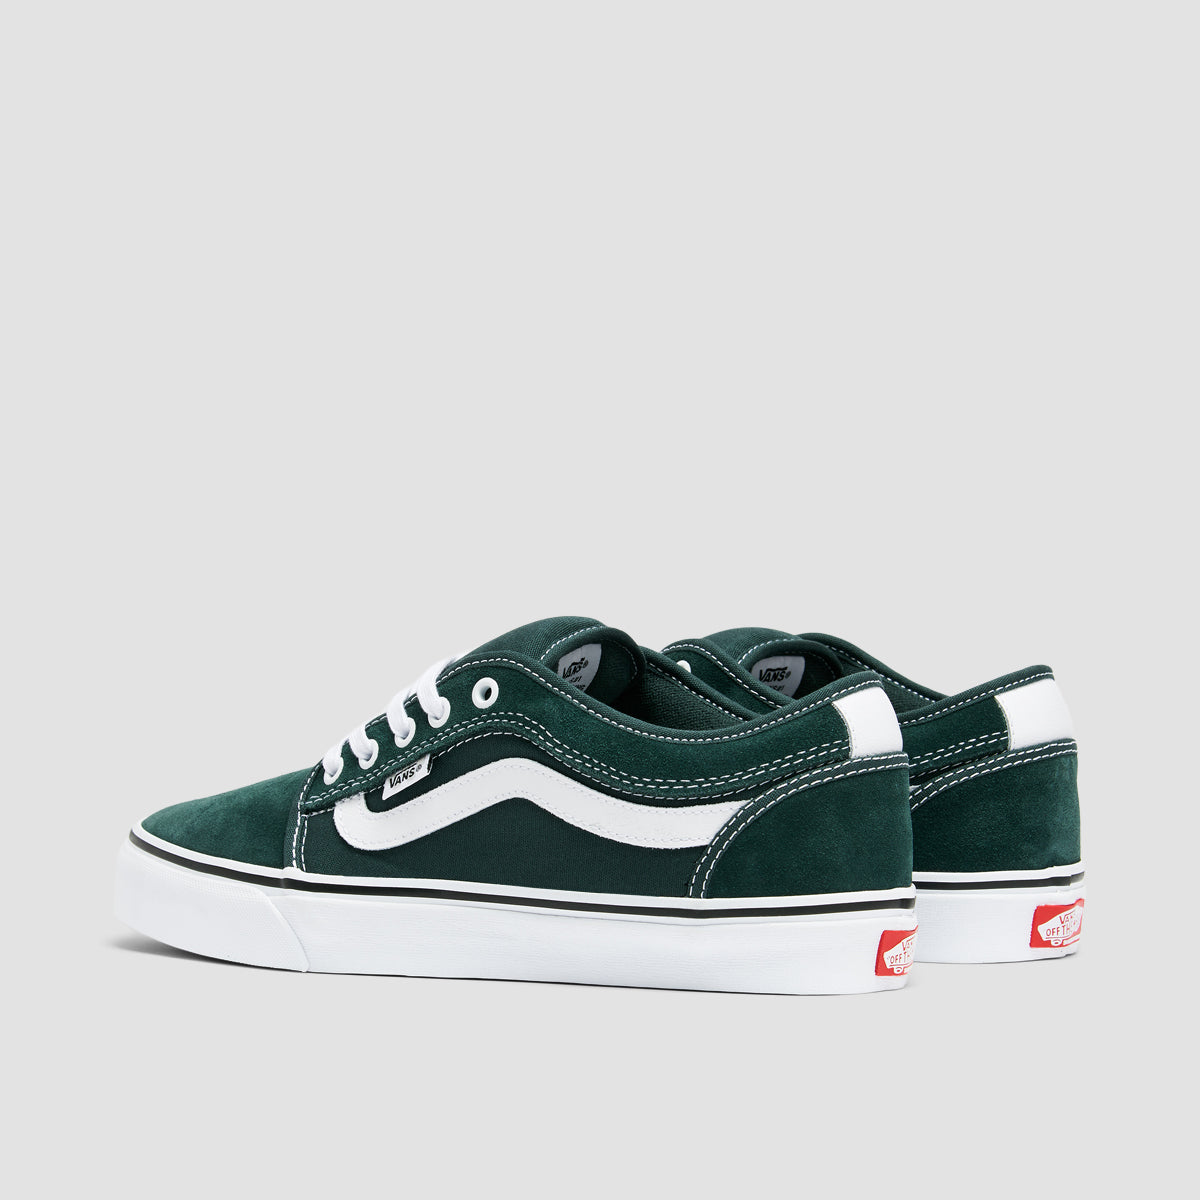 Vans Skate Chukka Low Sidestripe Shoes - Green Gables/True White